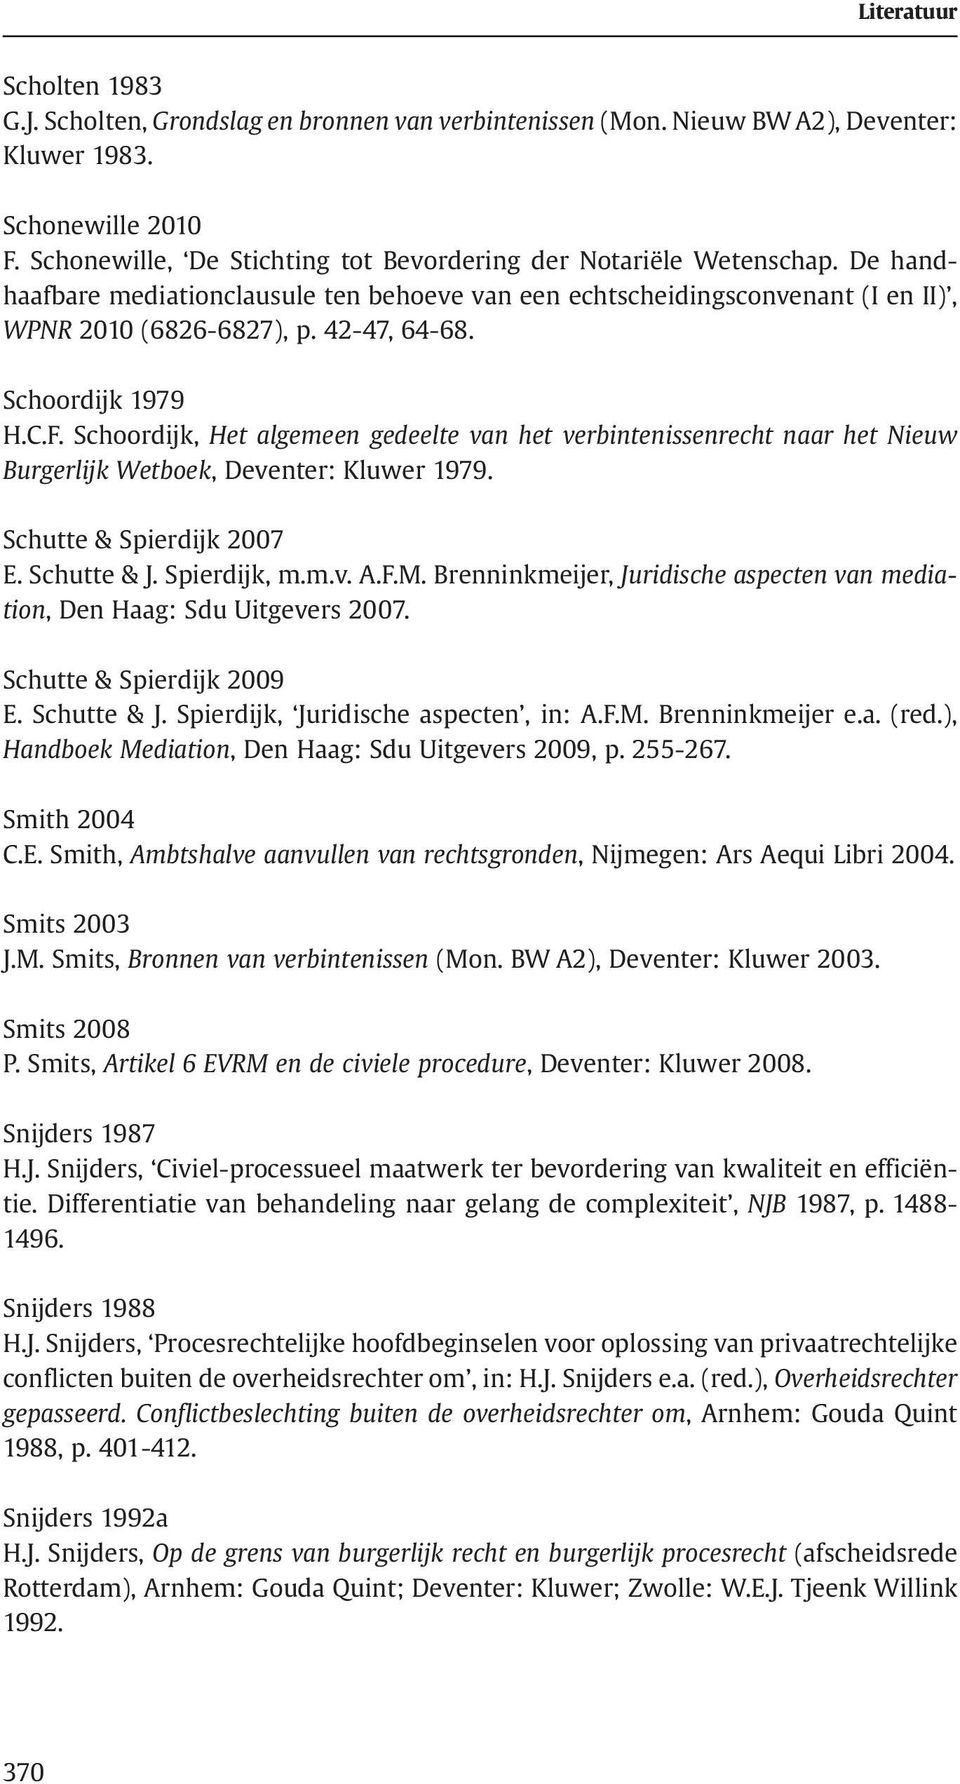 Schoordijk, Het algemeen gedeelte van het verbintenissenrecht naar het Nieuw Burgerlijk Wetboek, Deventer: Kluwer 1979. Schutte & Spierdijk 2007 E. Schutte & J. Spierdijk, m.m.v. A.F.M.